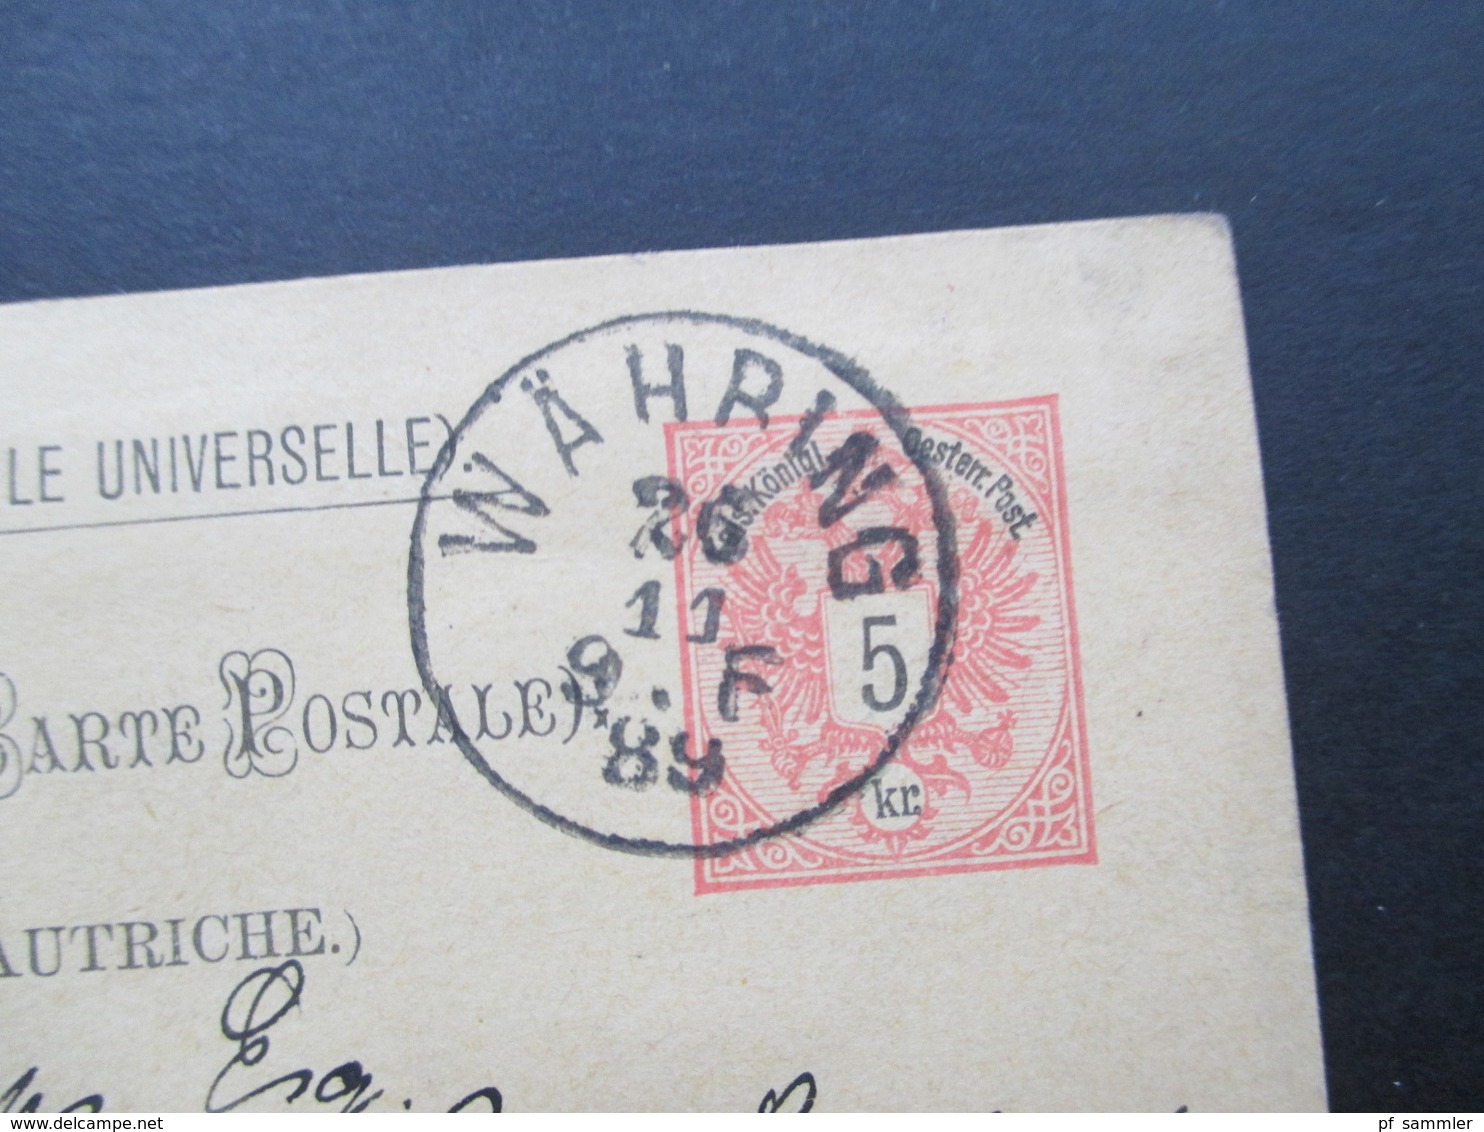 Österreich 1889 GA P 51 Weltvereinspostkarte Nach Birmingham. Returned Same Day! C.J. Philips Birmingham. - Briefe U. Dokumente